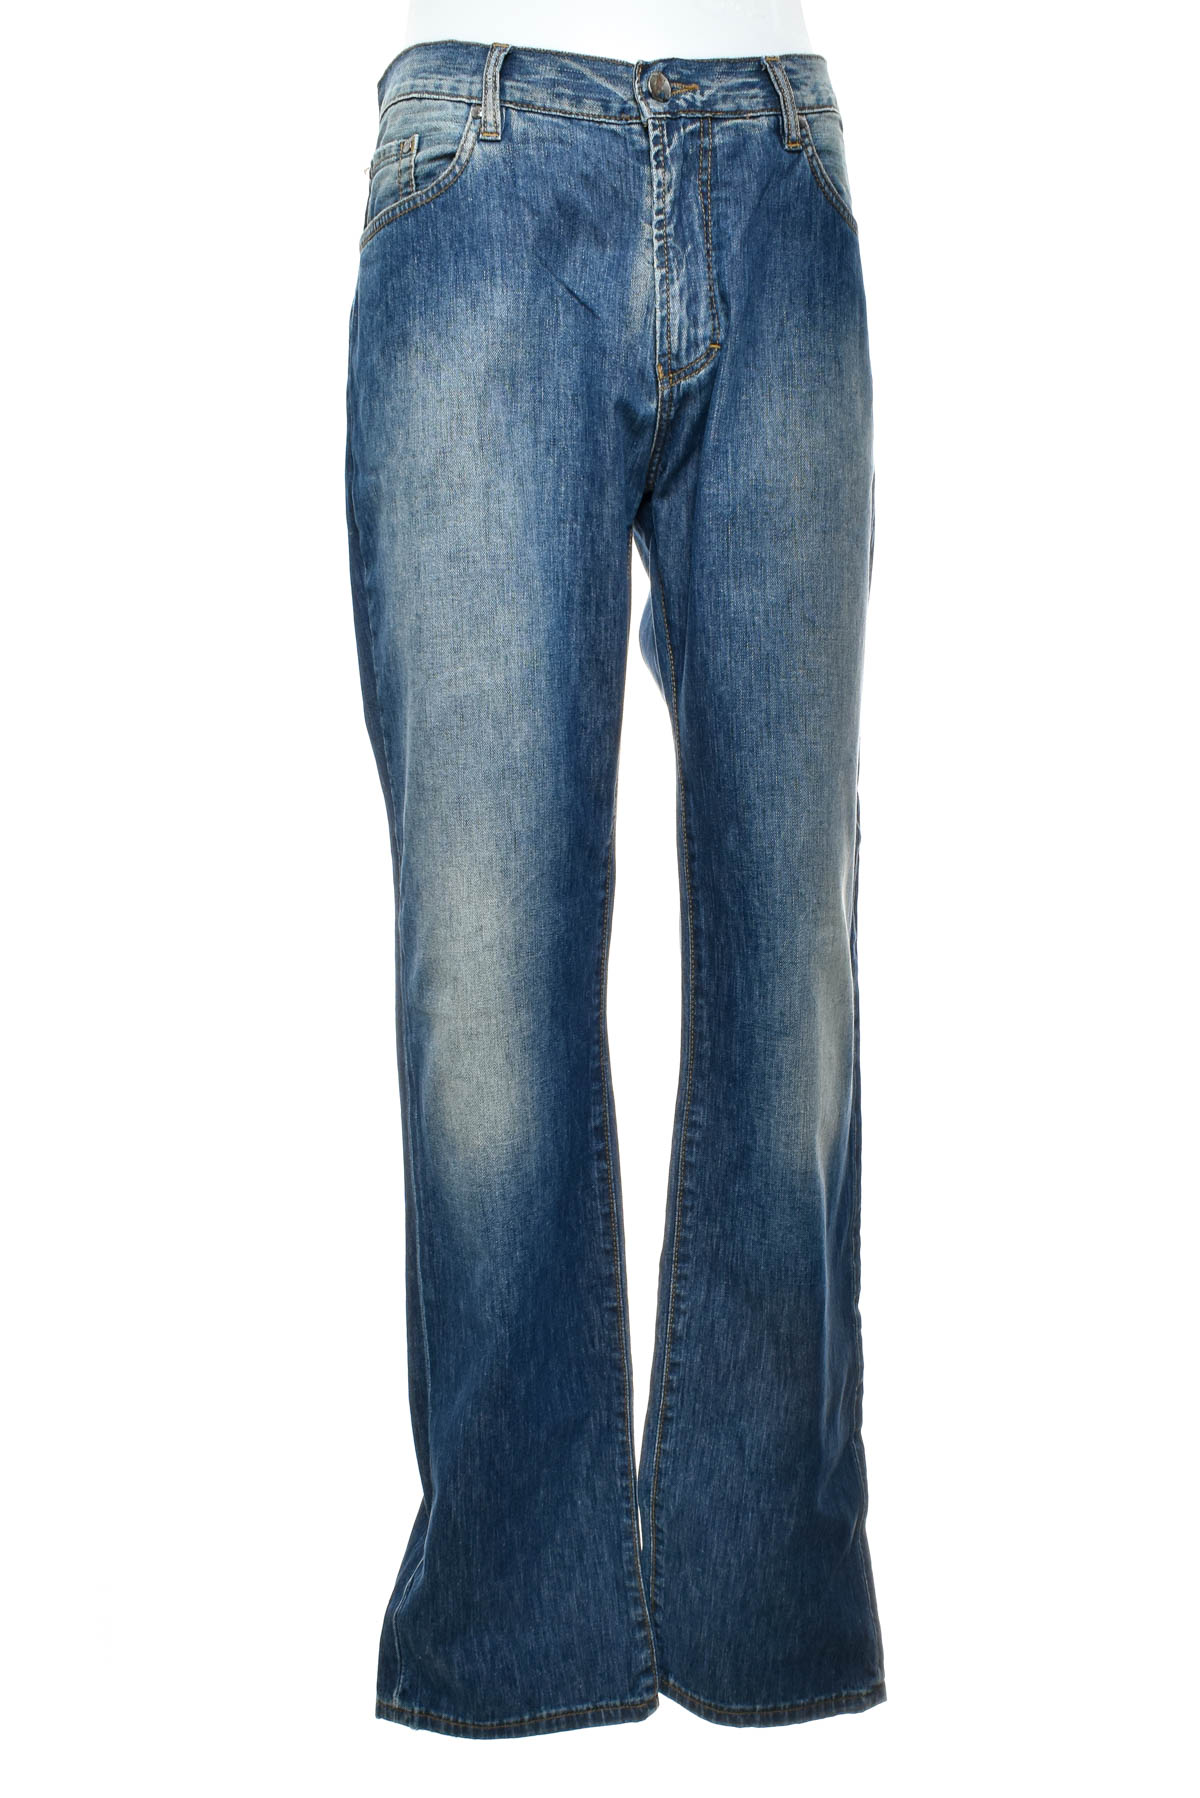 Men's jeans - 0